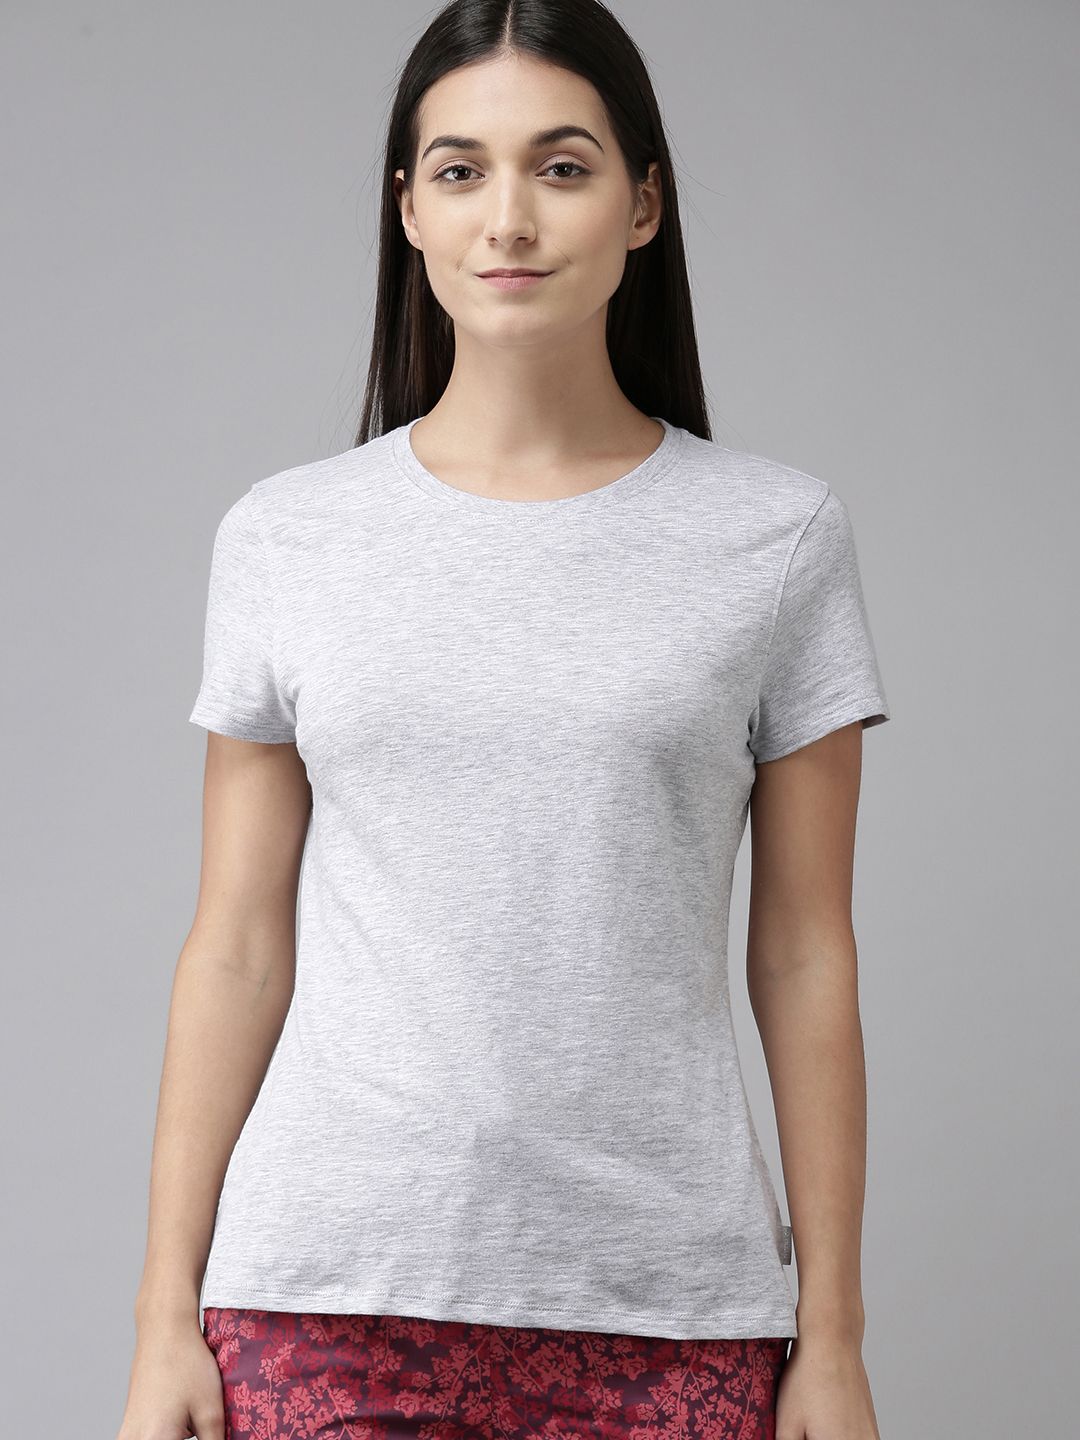 Van Heusen Women Grey Melange Solid Pure Cotton Lounge Tshirt Price in India